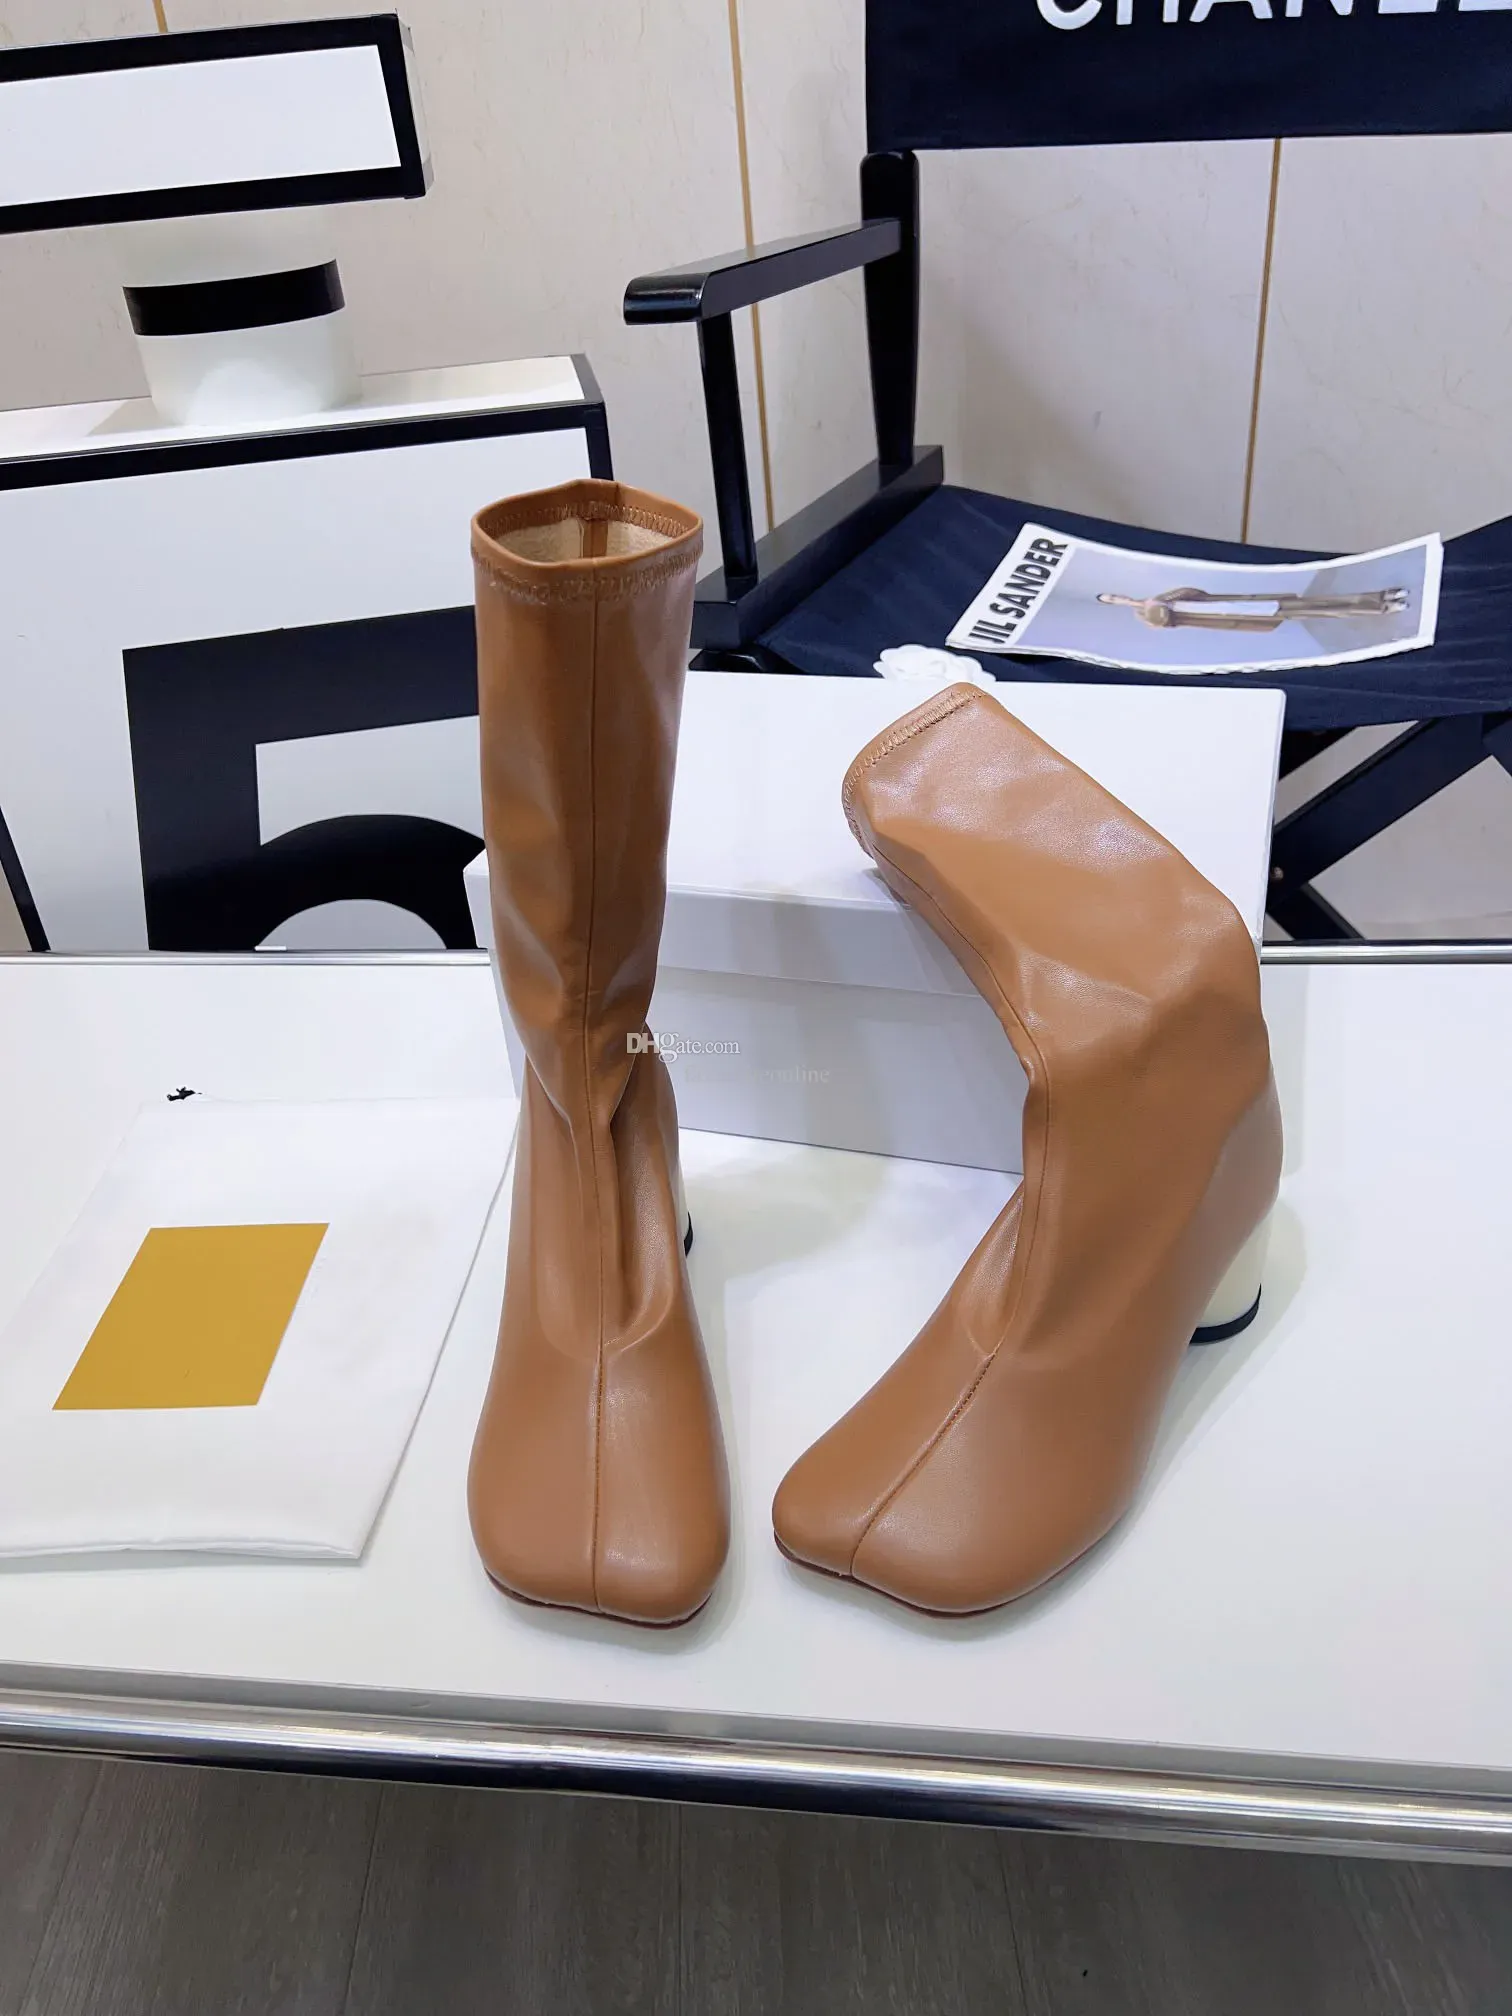 Maison Casual лучшего качества бренда роскоши женская половина ботинок высокая каблука 7 см ковбой MM6 подлинная кожа среднего размера 34-40